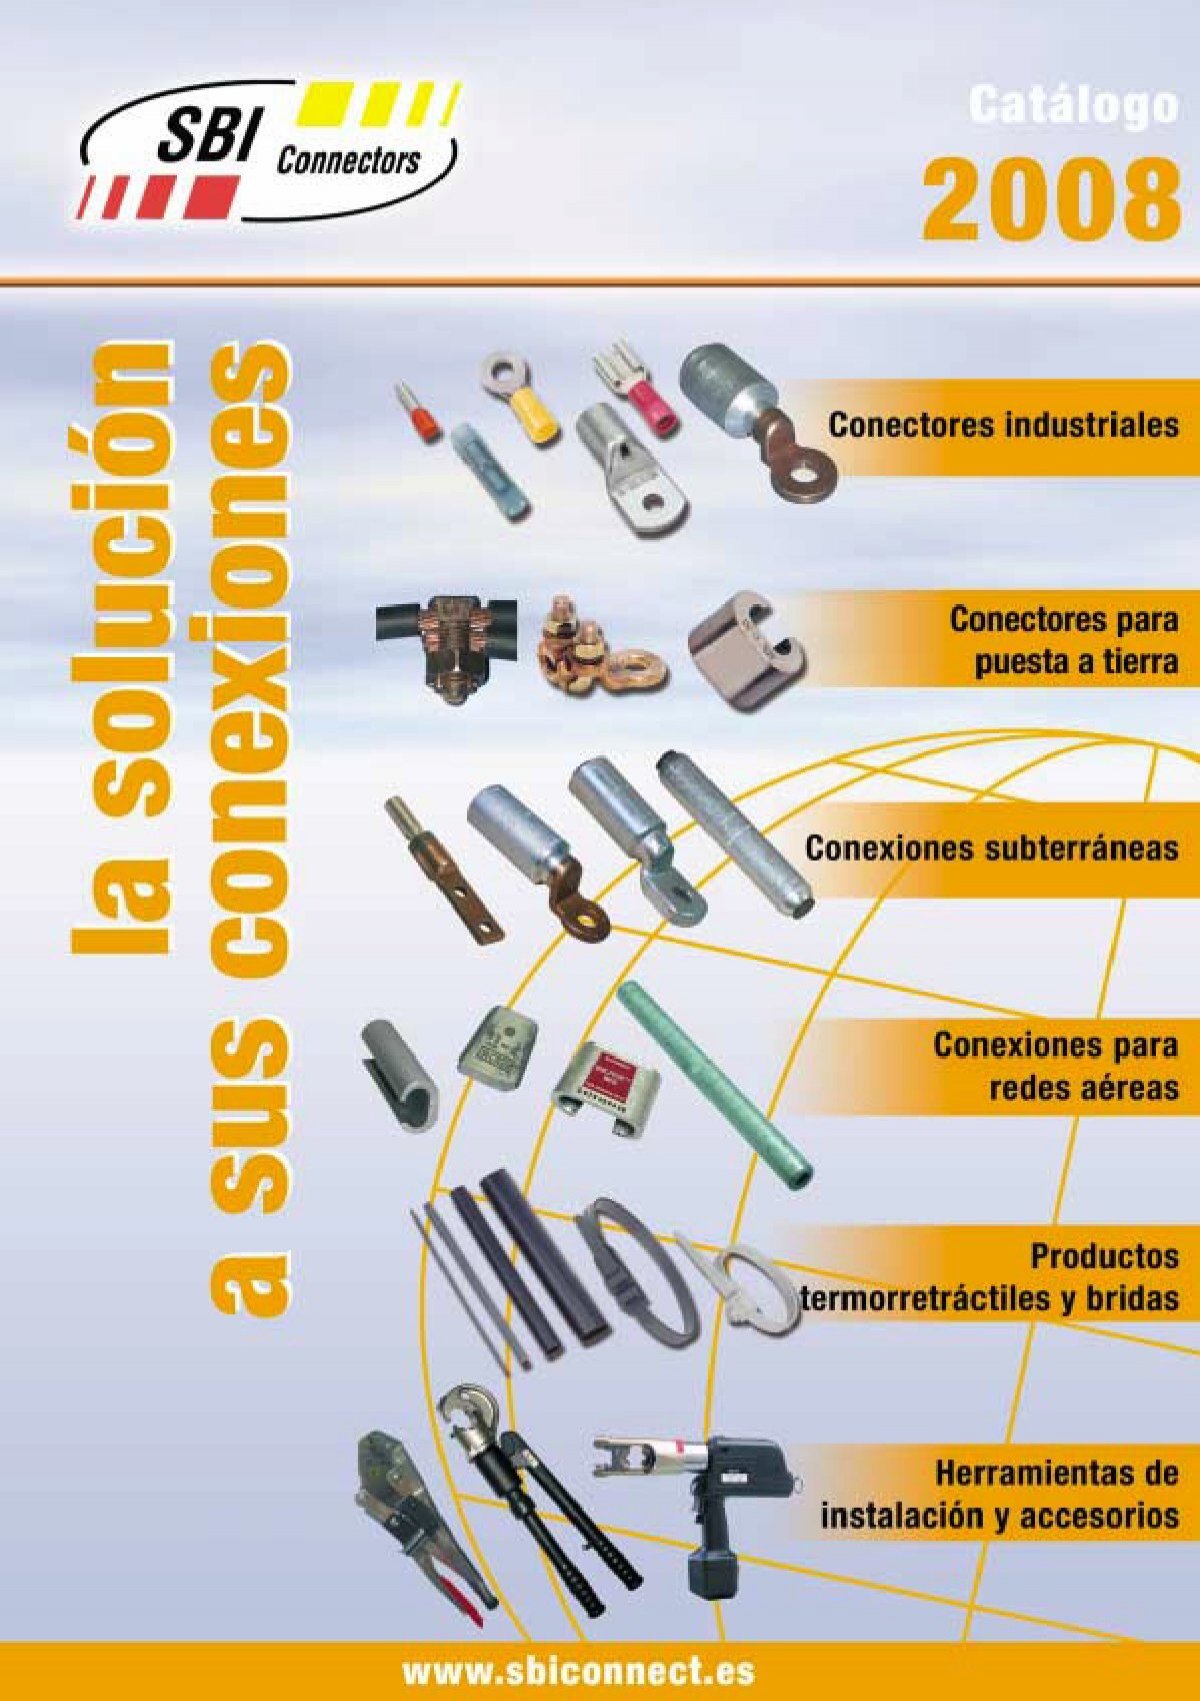 Punteras huecas - Material de conexión - Material de instalación: SBI and  Disponible